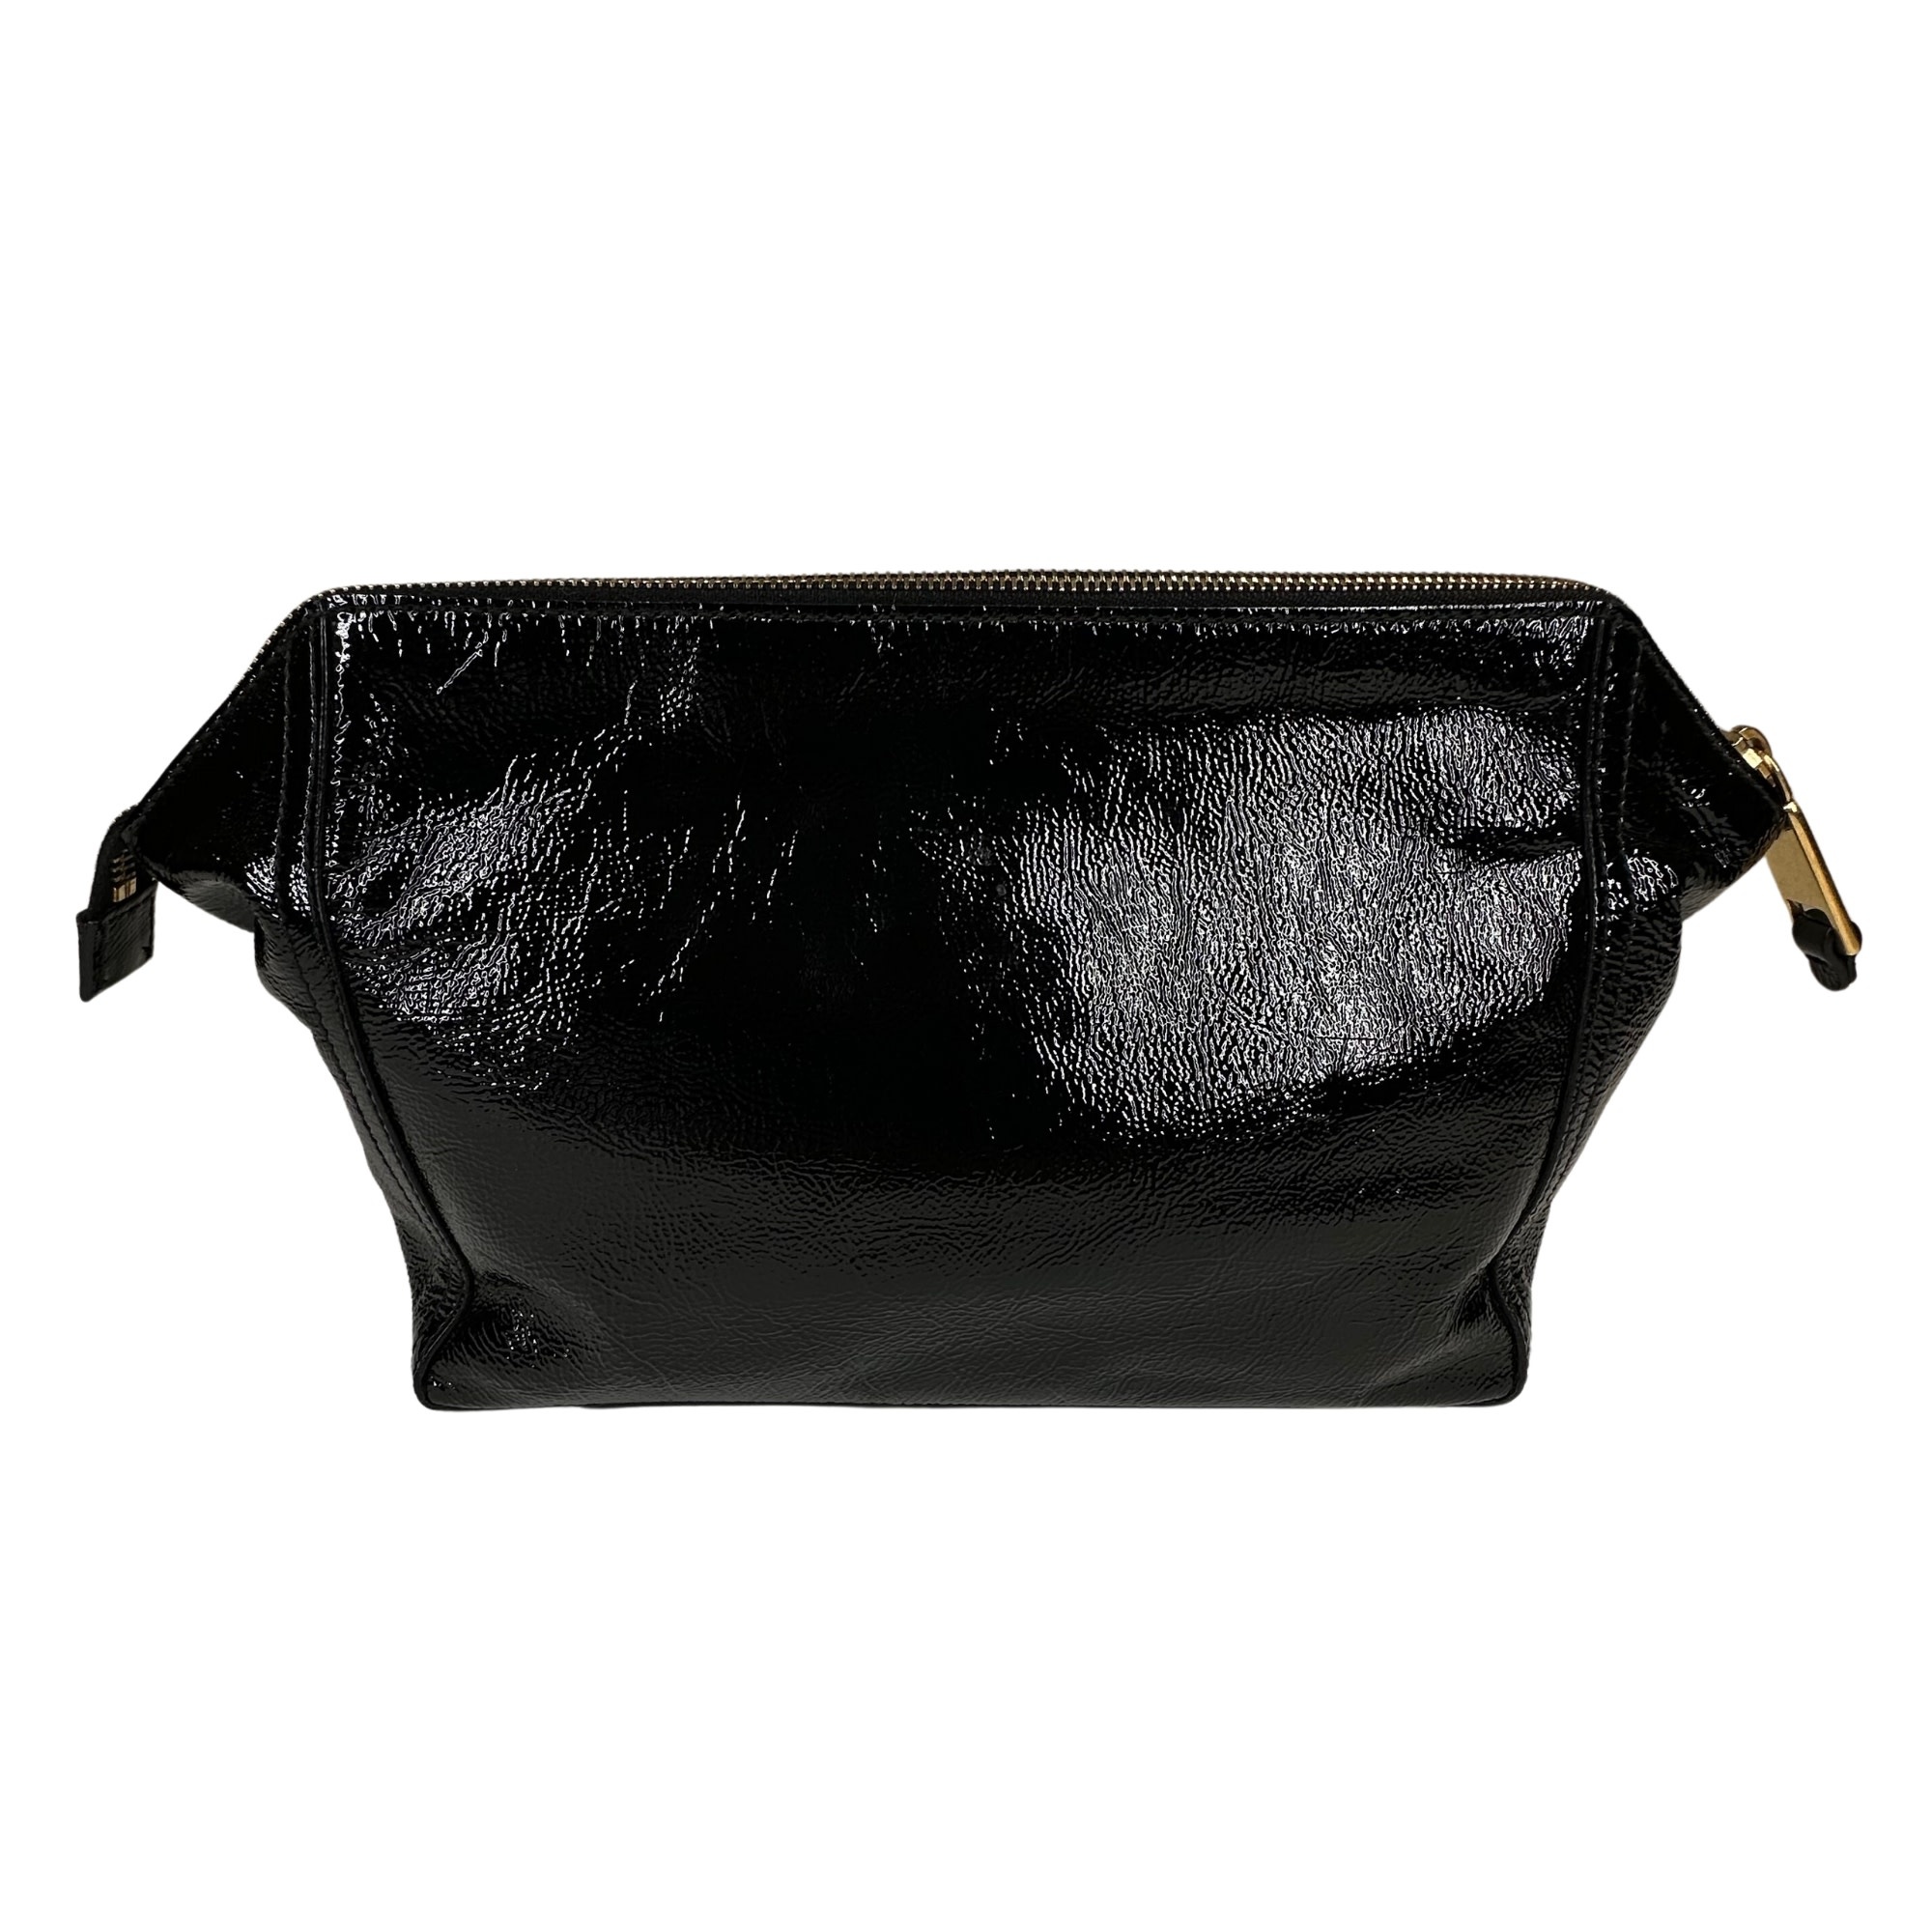 Laruce Mosaic Makeup Bag, Black/Iridescent